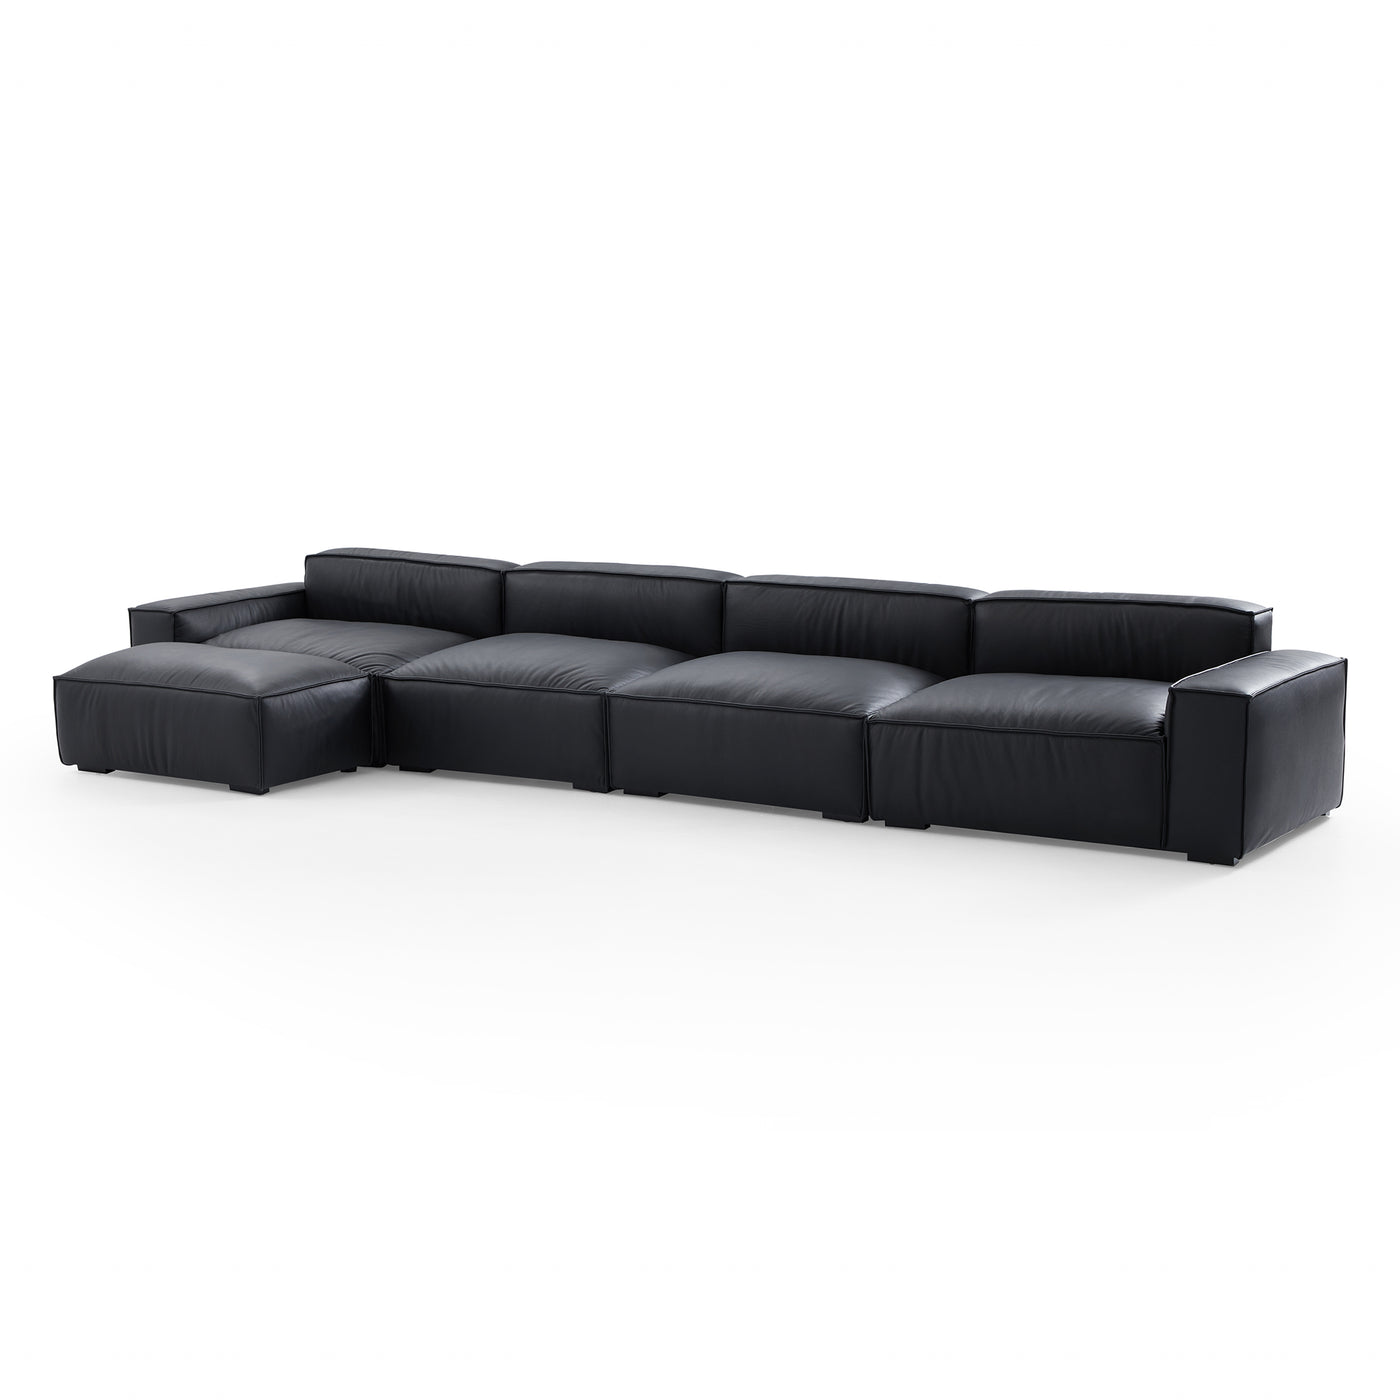 Luxury Minimalist Leather Black Sofa and Ottoman-Black-179.5"